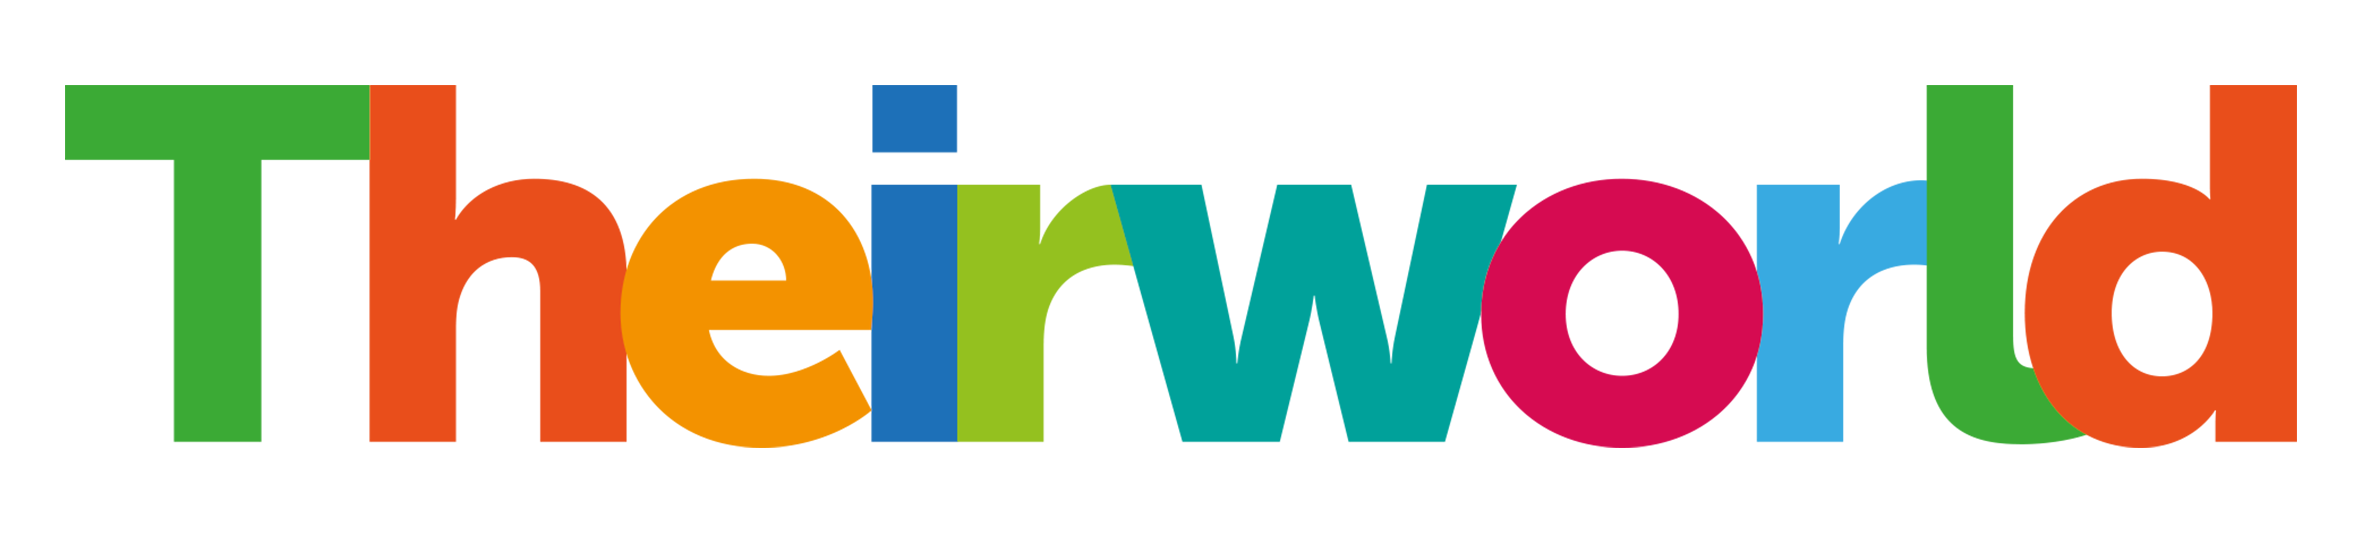 Theirworld logo